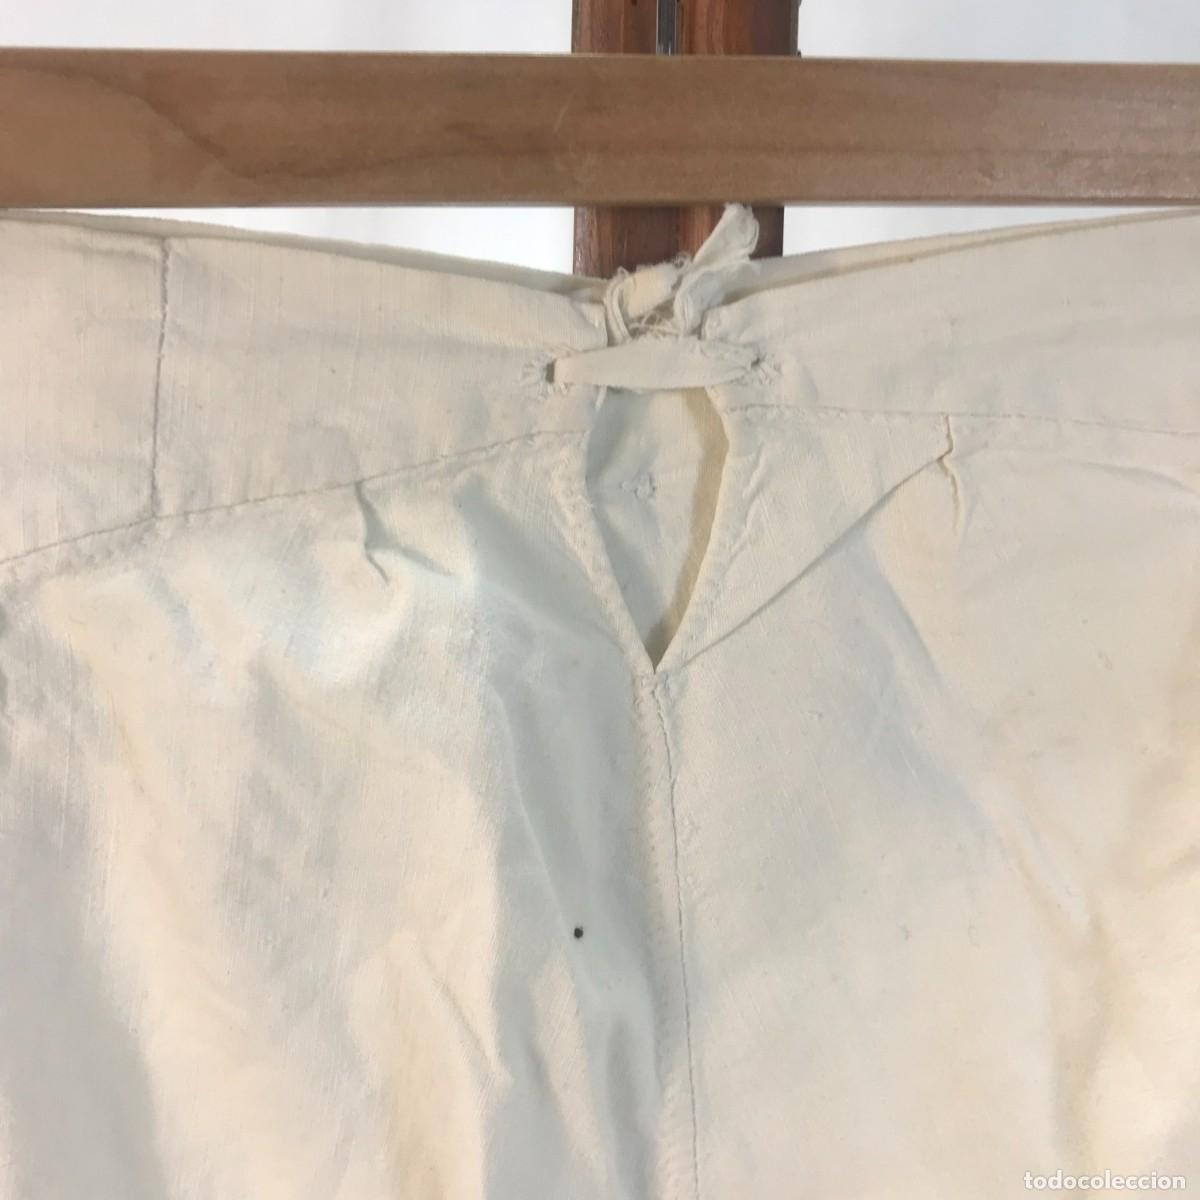 antiguo calzoncillo largo vintage 100% algodón - Compra venta en  todocoleccion